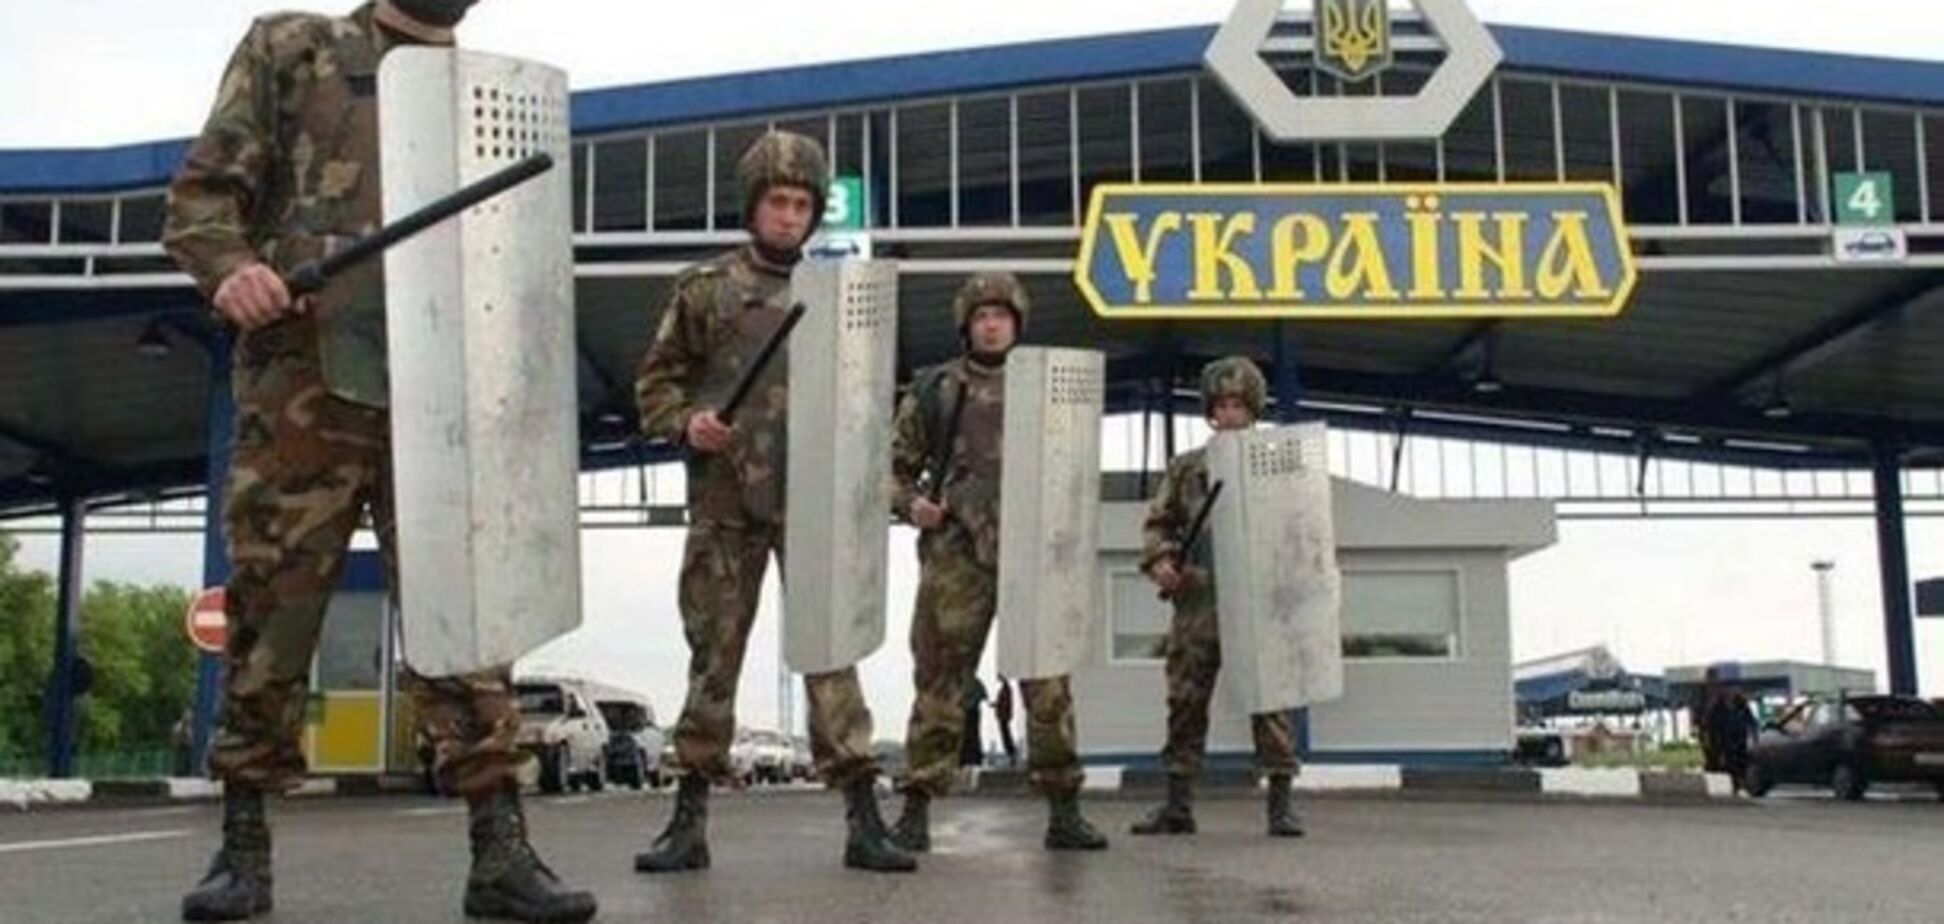 ''Визового режима недостаточно'': в Украине предложили кардинальные меры по границе с РФ